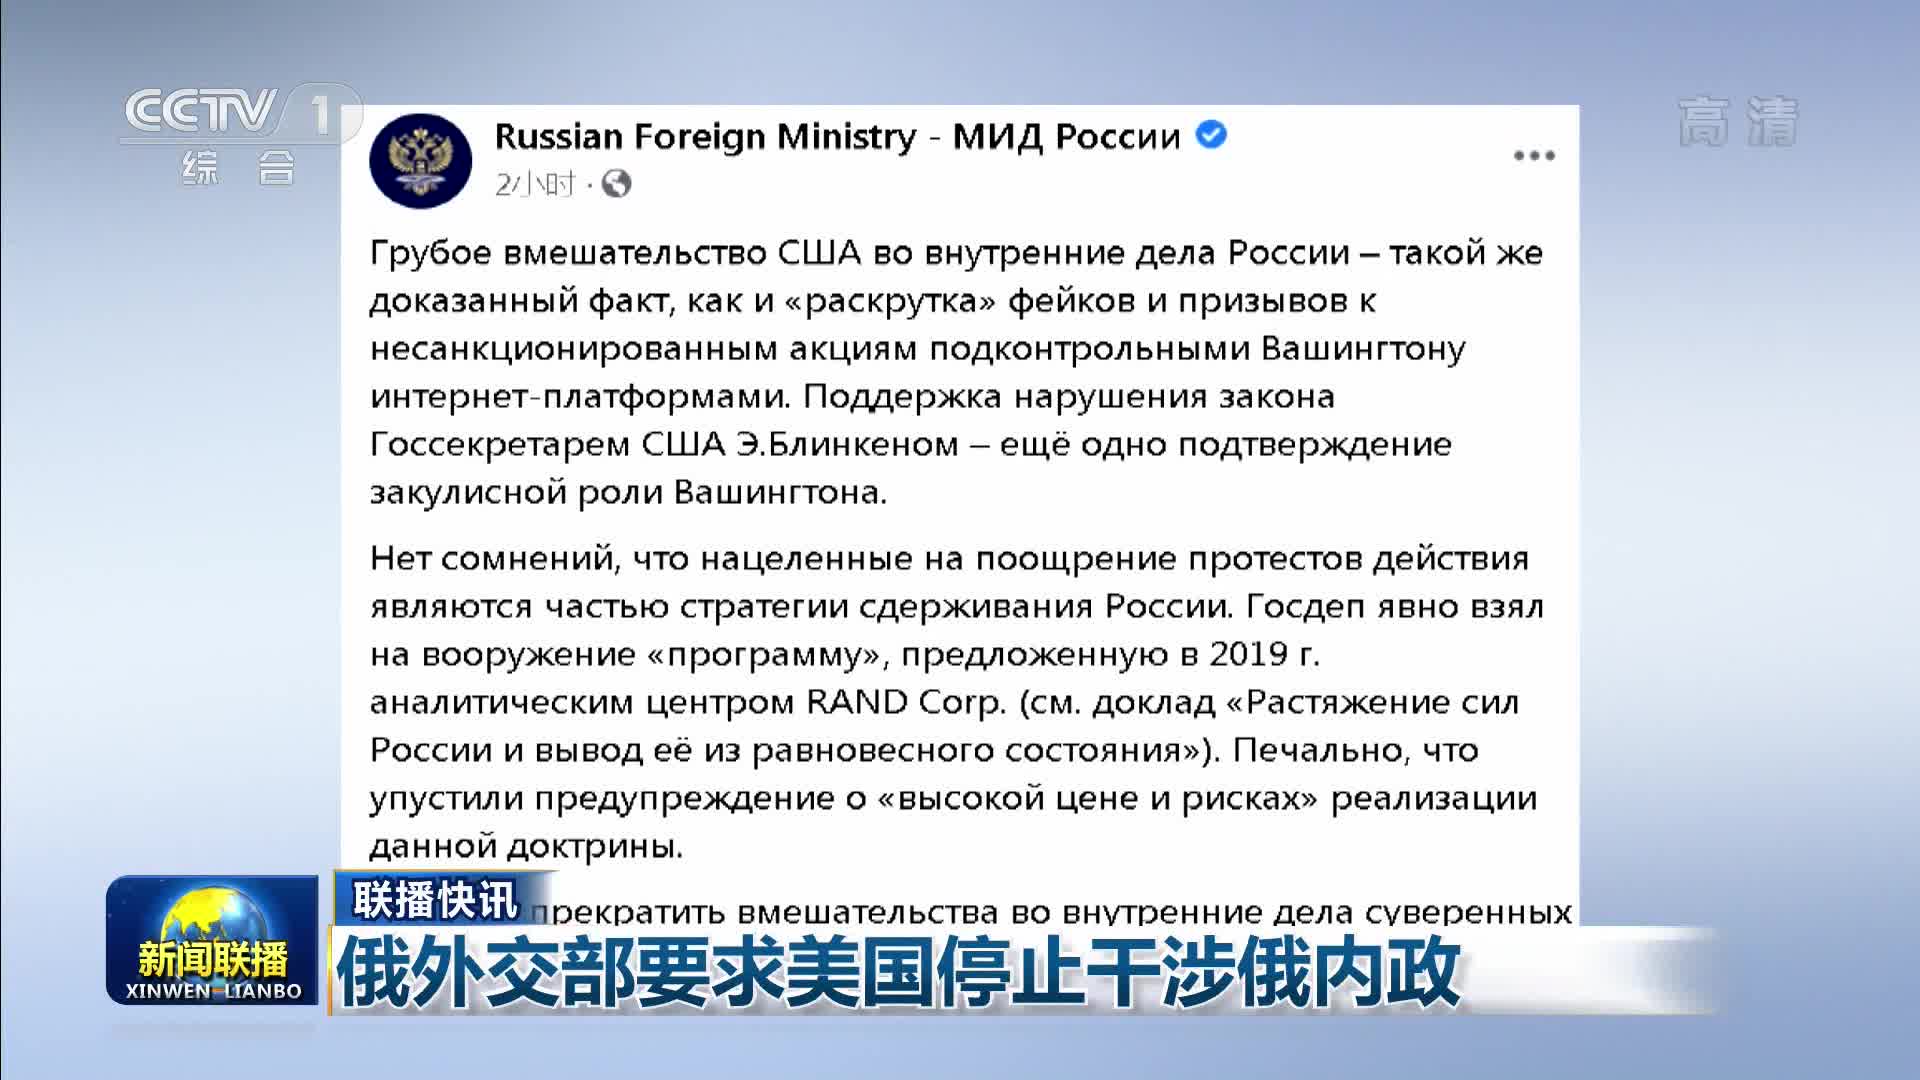 【联播快讯】俄外交部要求美国停止干涉俄内政